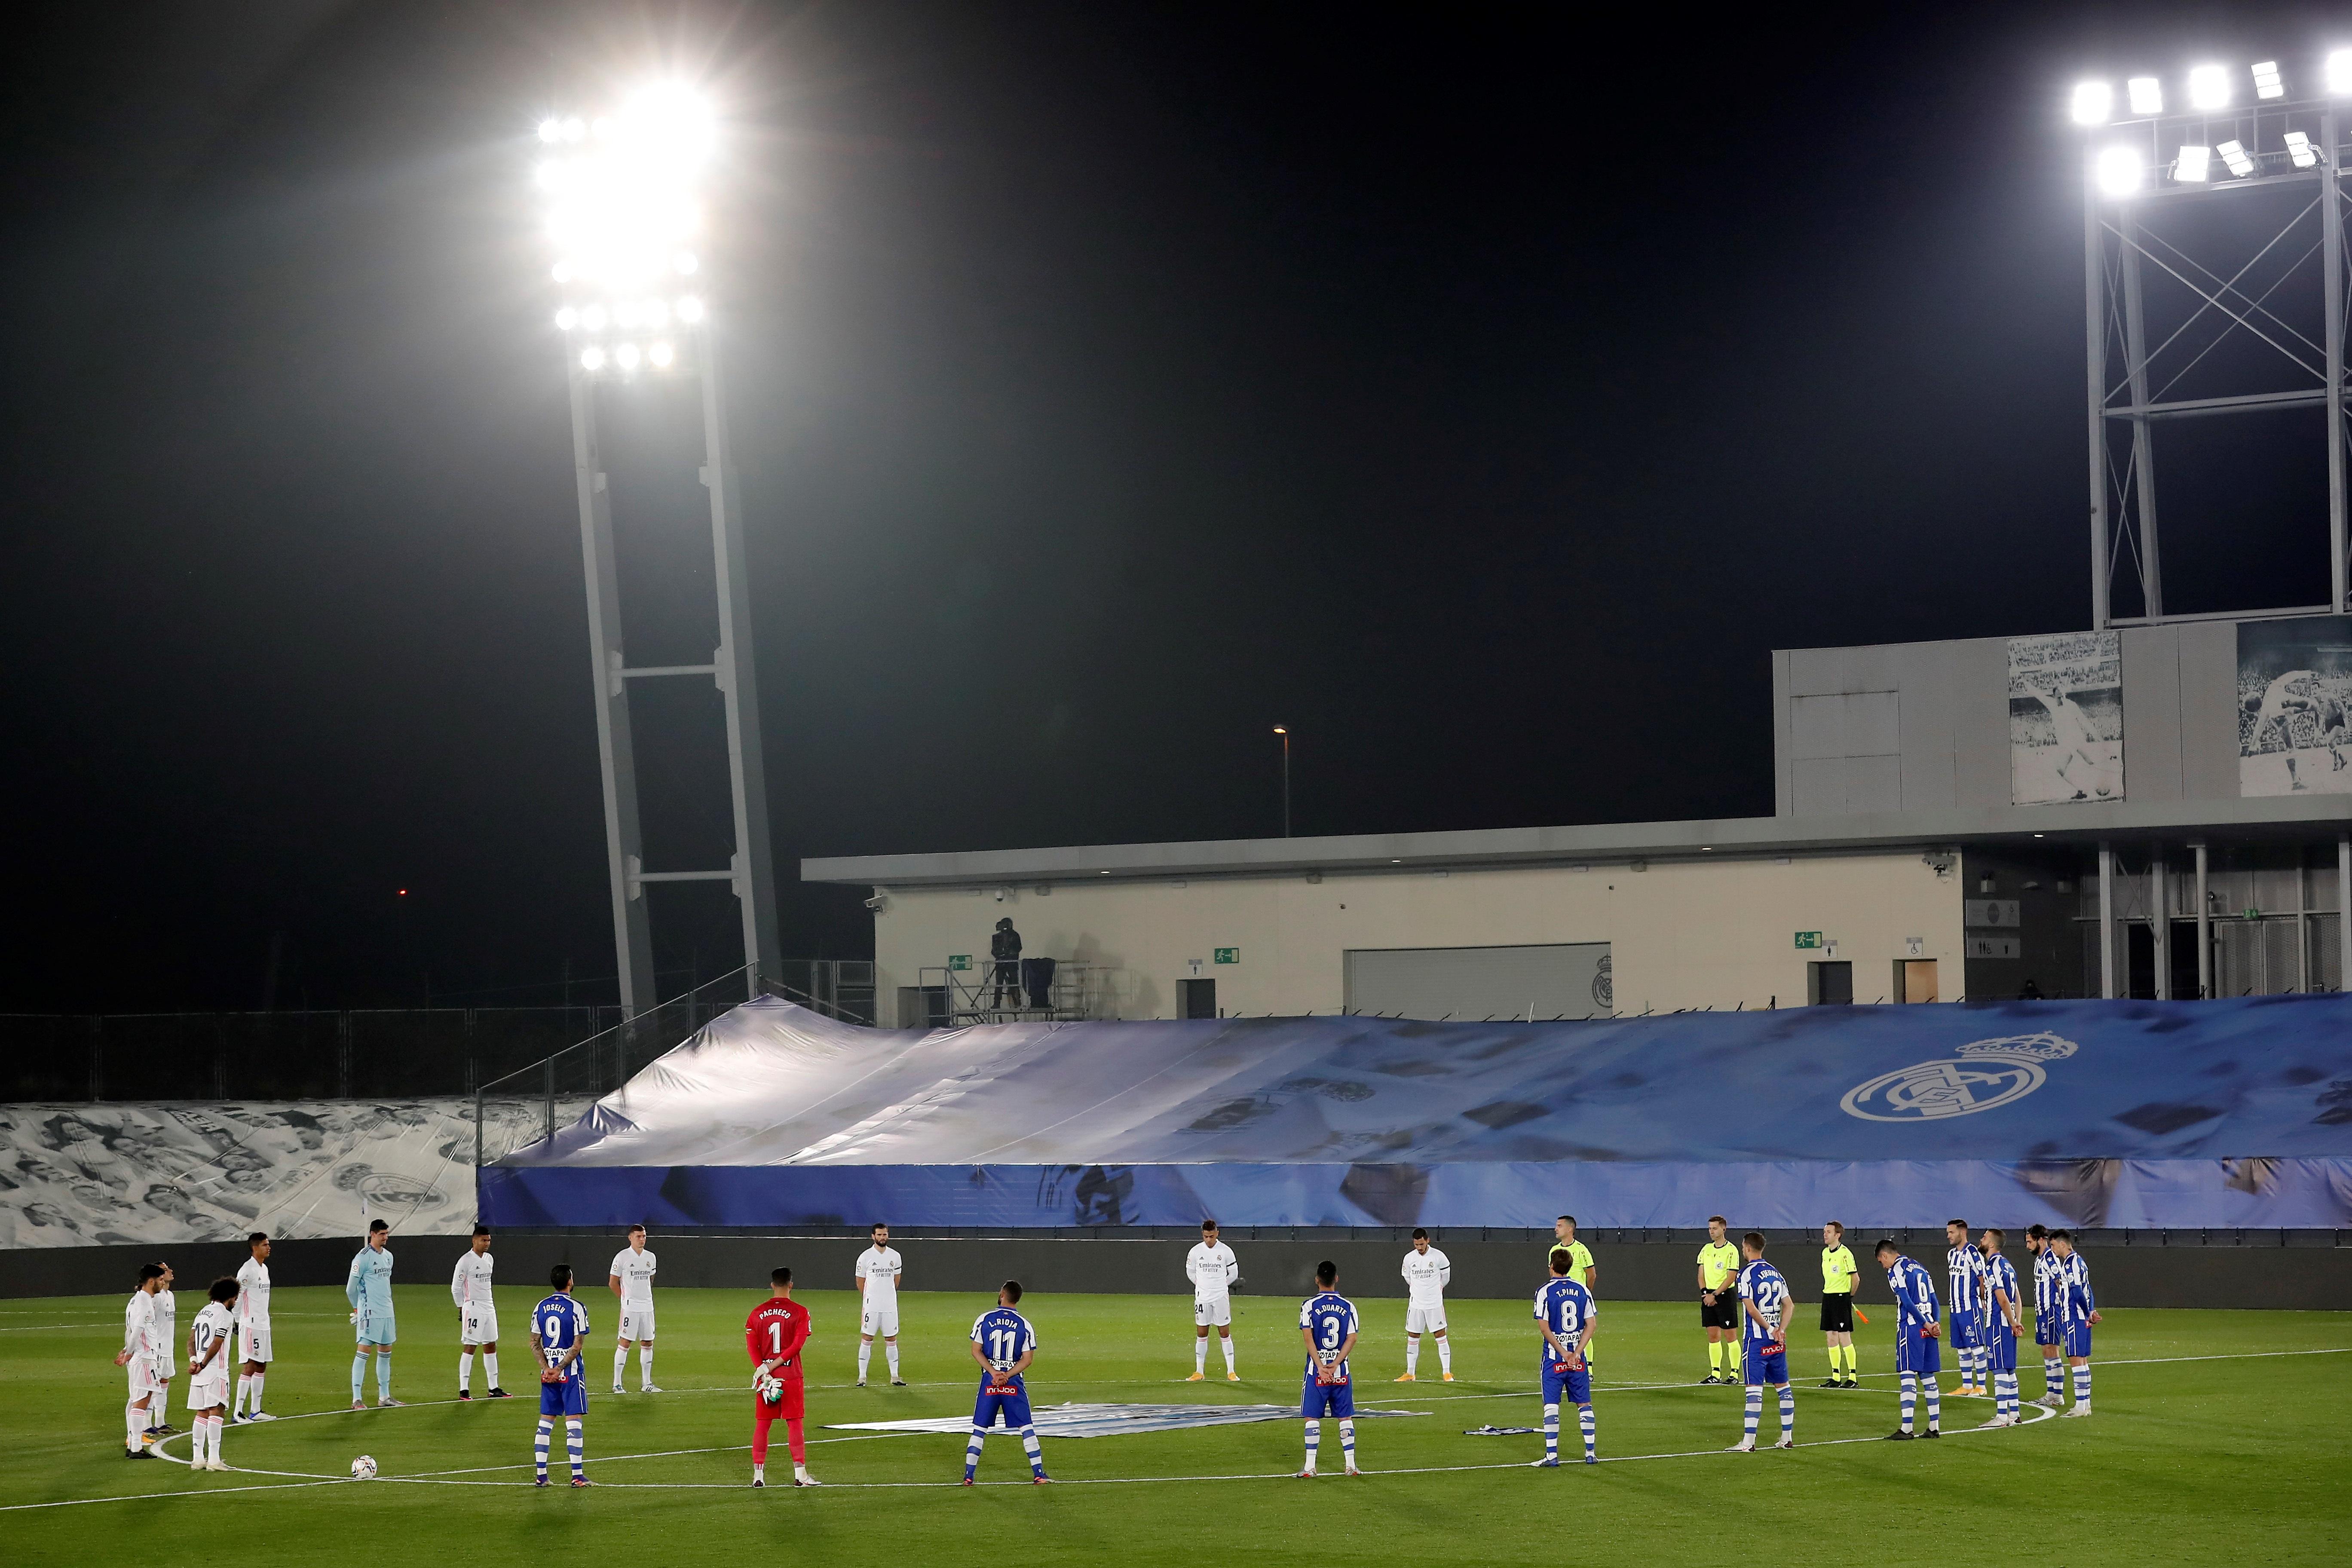 El minuto de silencio previsto por la FIFA en todas las competiciones de fútbol a nivel mundial, incluyó un homenaje en el juego entre el Real Madrid y el Alavés. (Foto Prensa Libre: EFE)